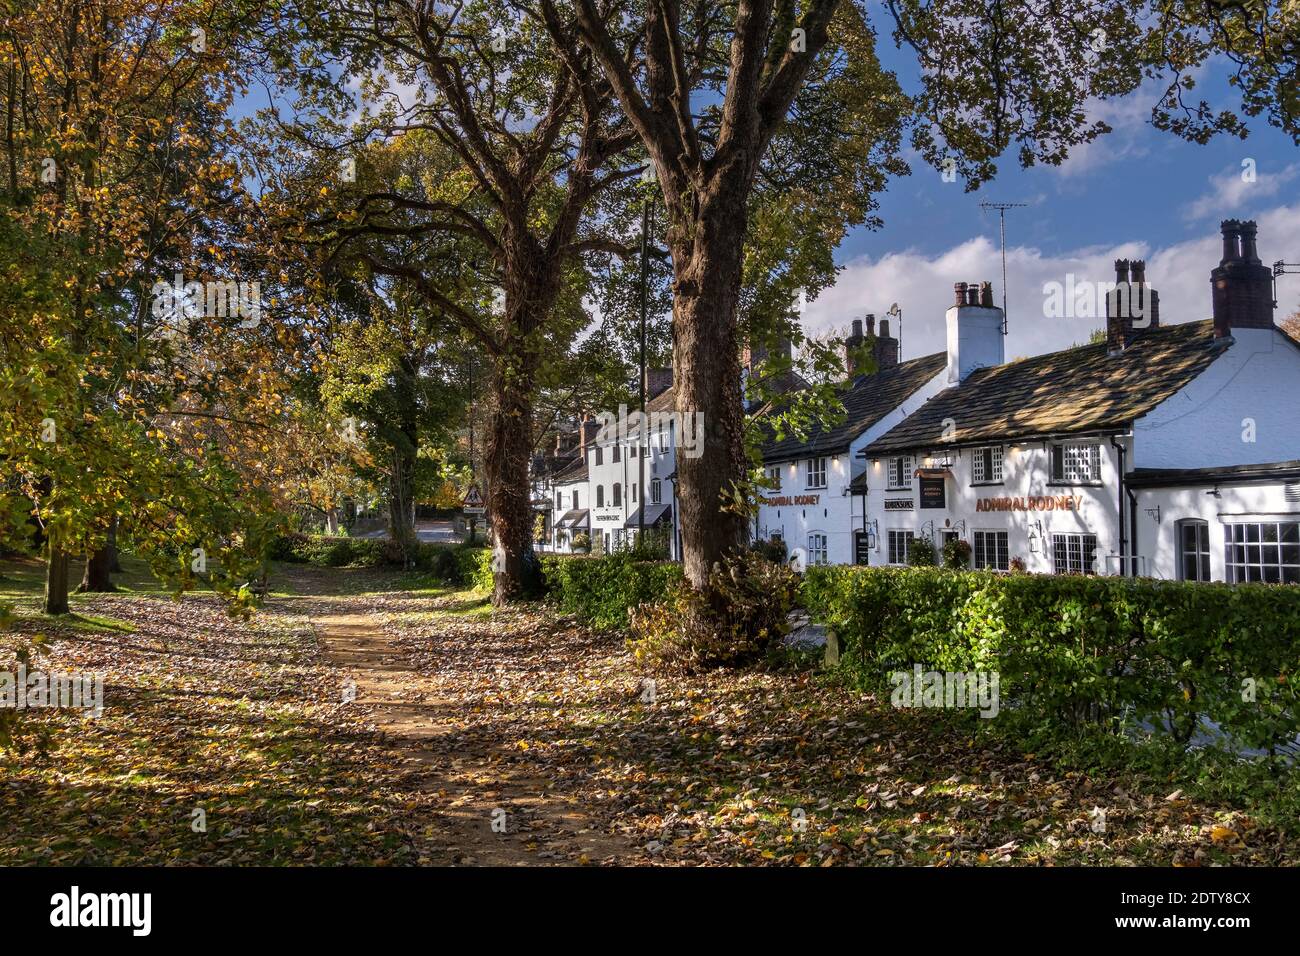 Prestbury Village en automne de Parrott's Field, Prestbury, Cheshire, Angleterre, Royaume-Uni Banque D'Images